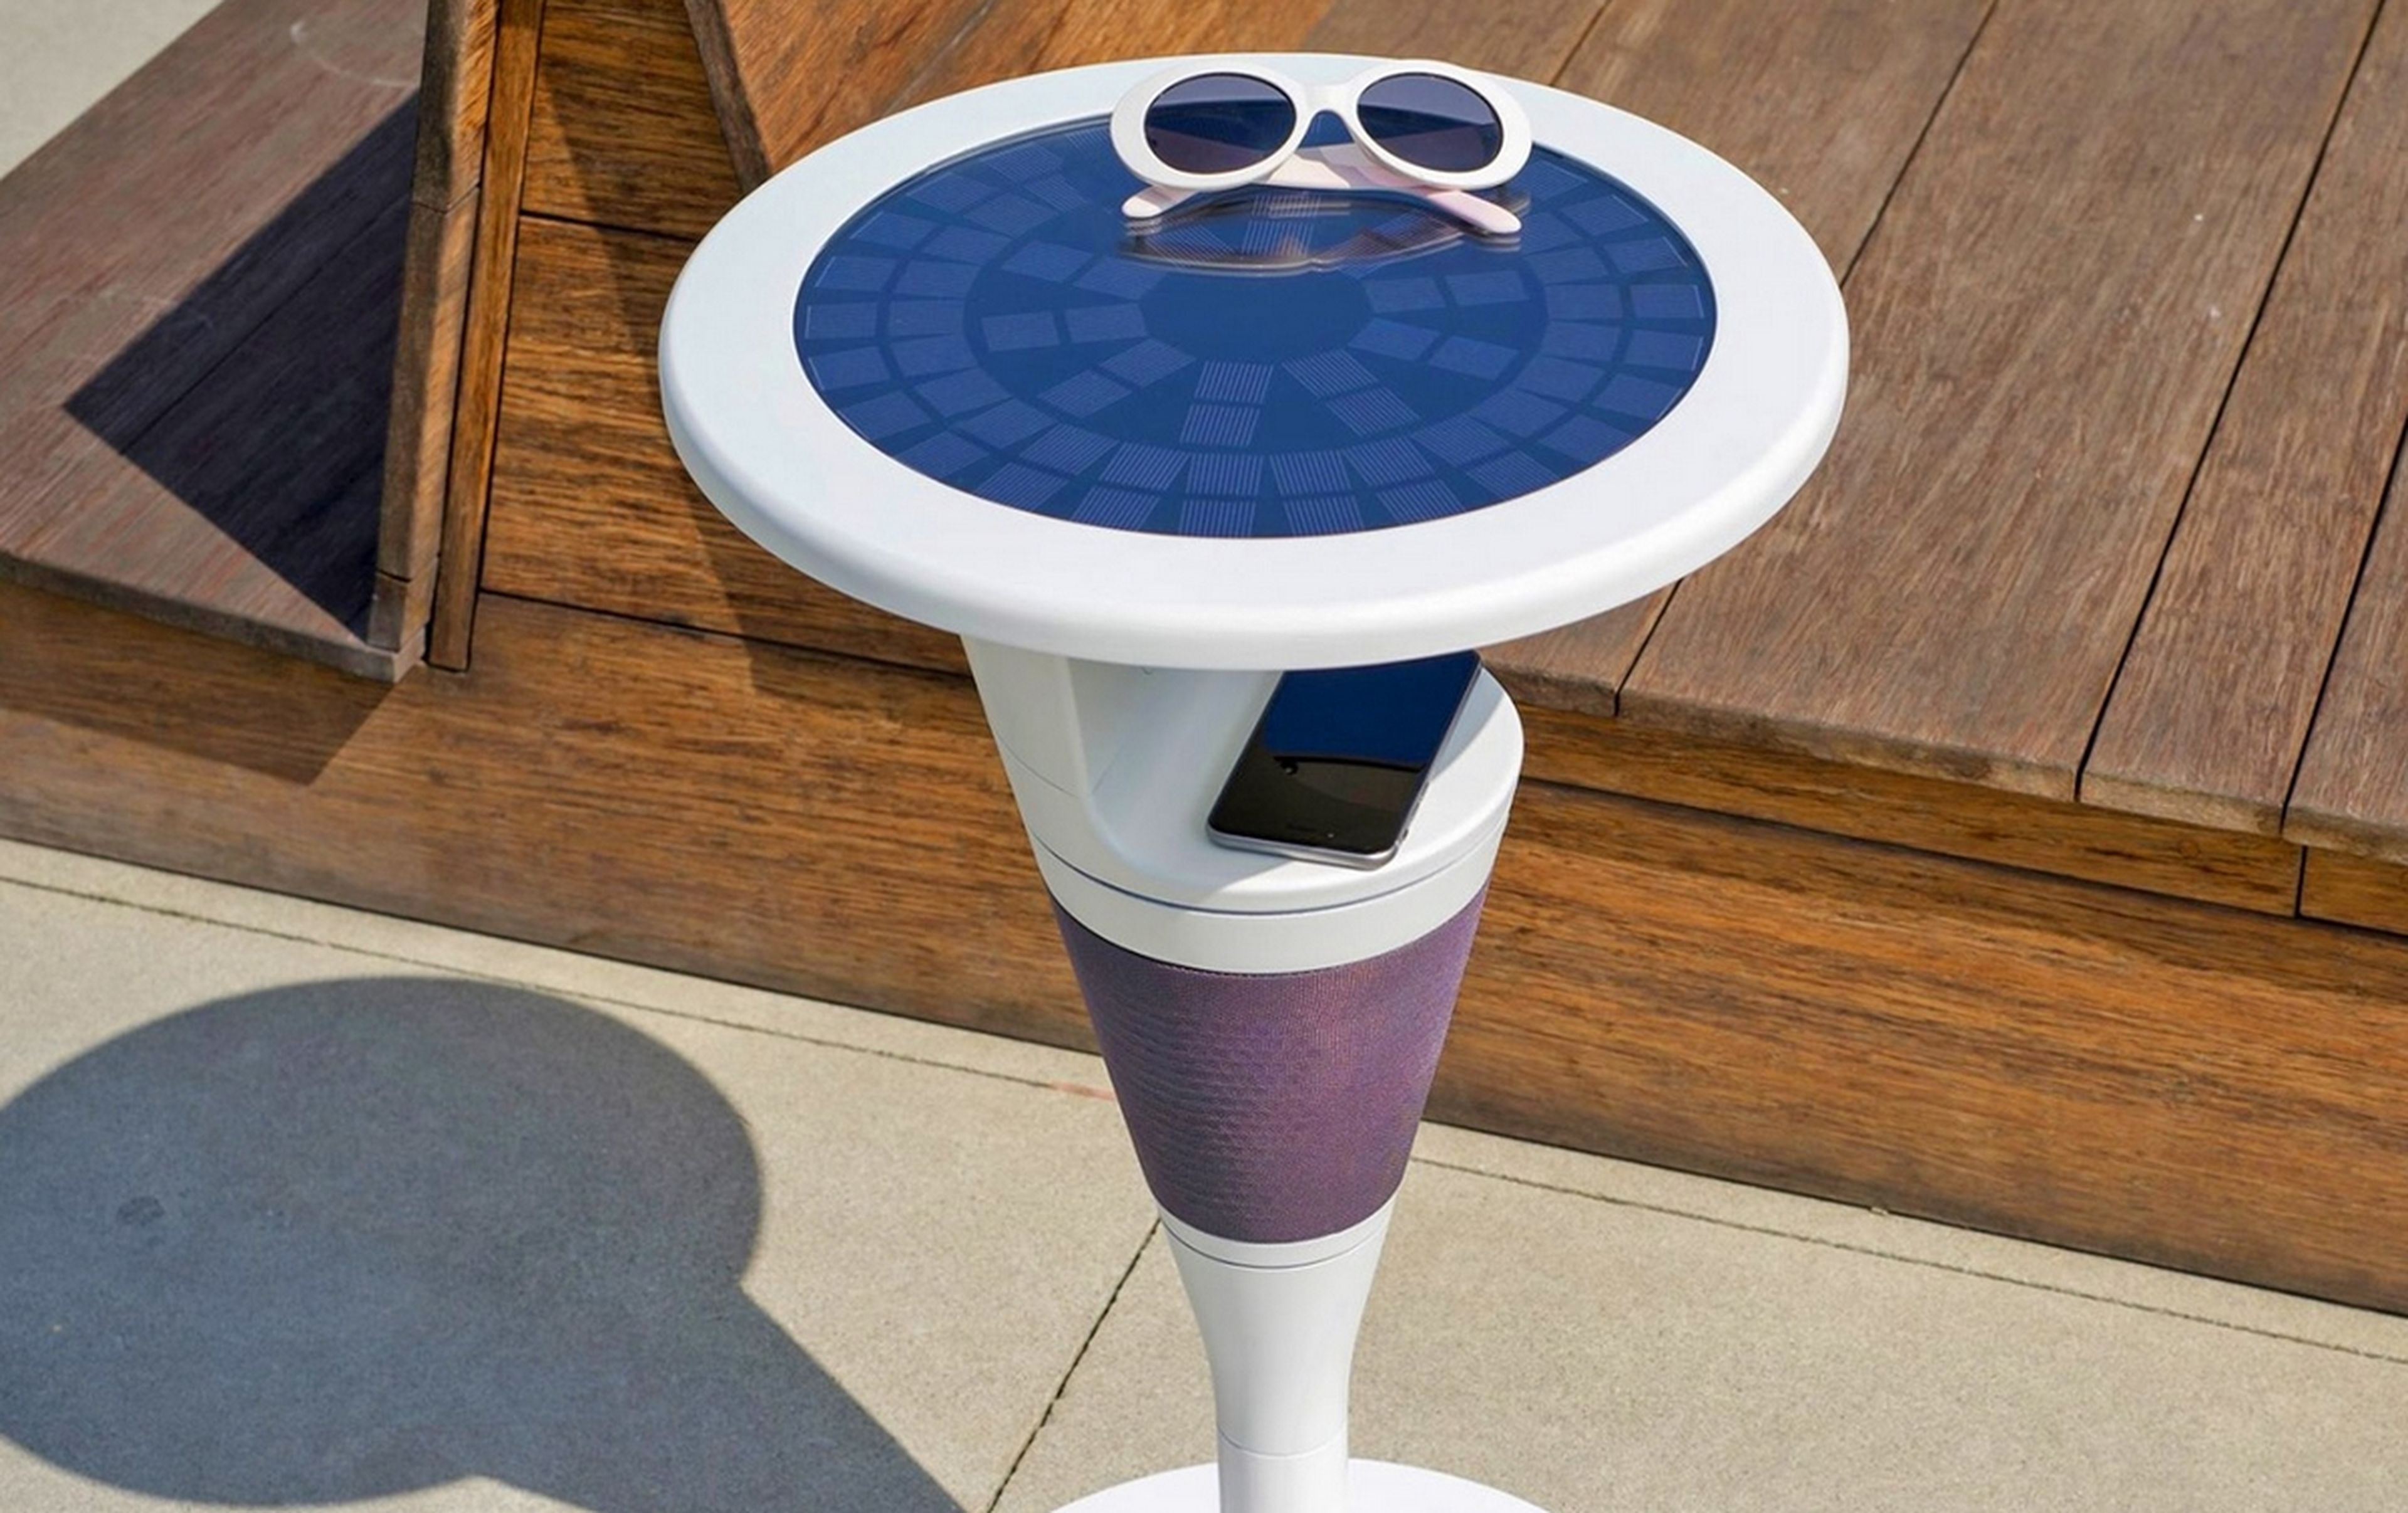 Esta mesa de jardín tiene carga inalámbrica solar para el móvil y altavoces JBL para escuchar música